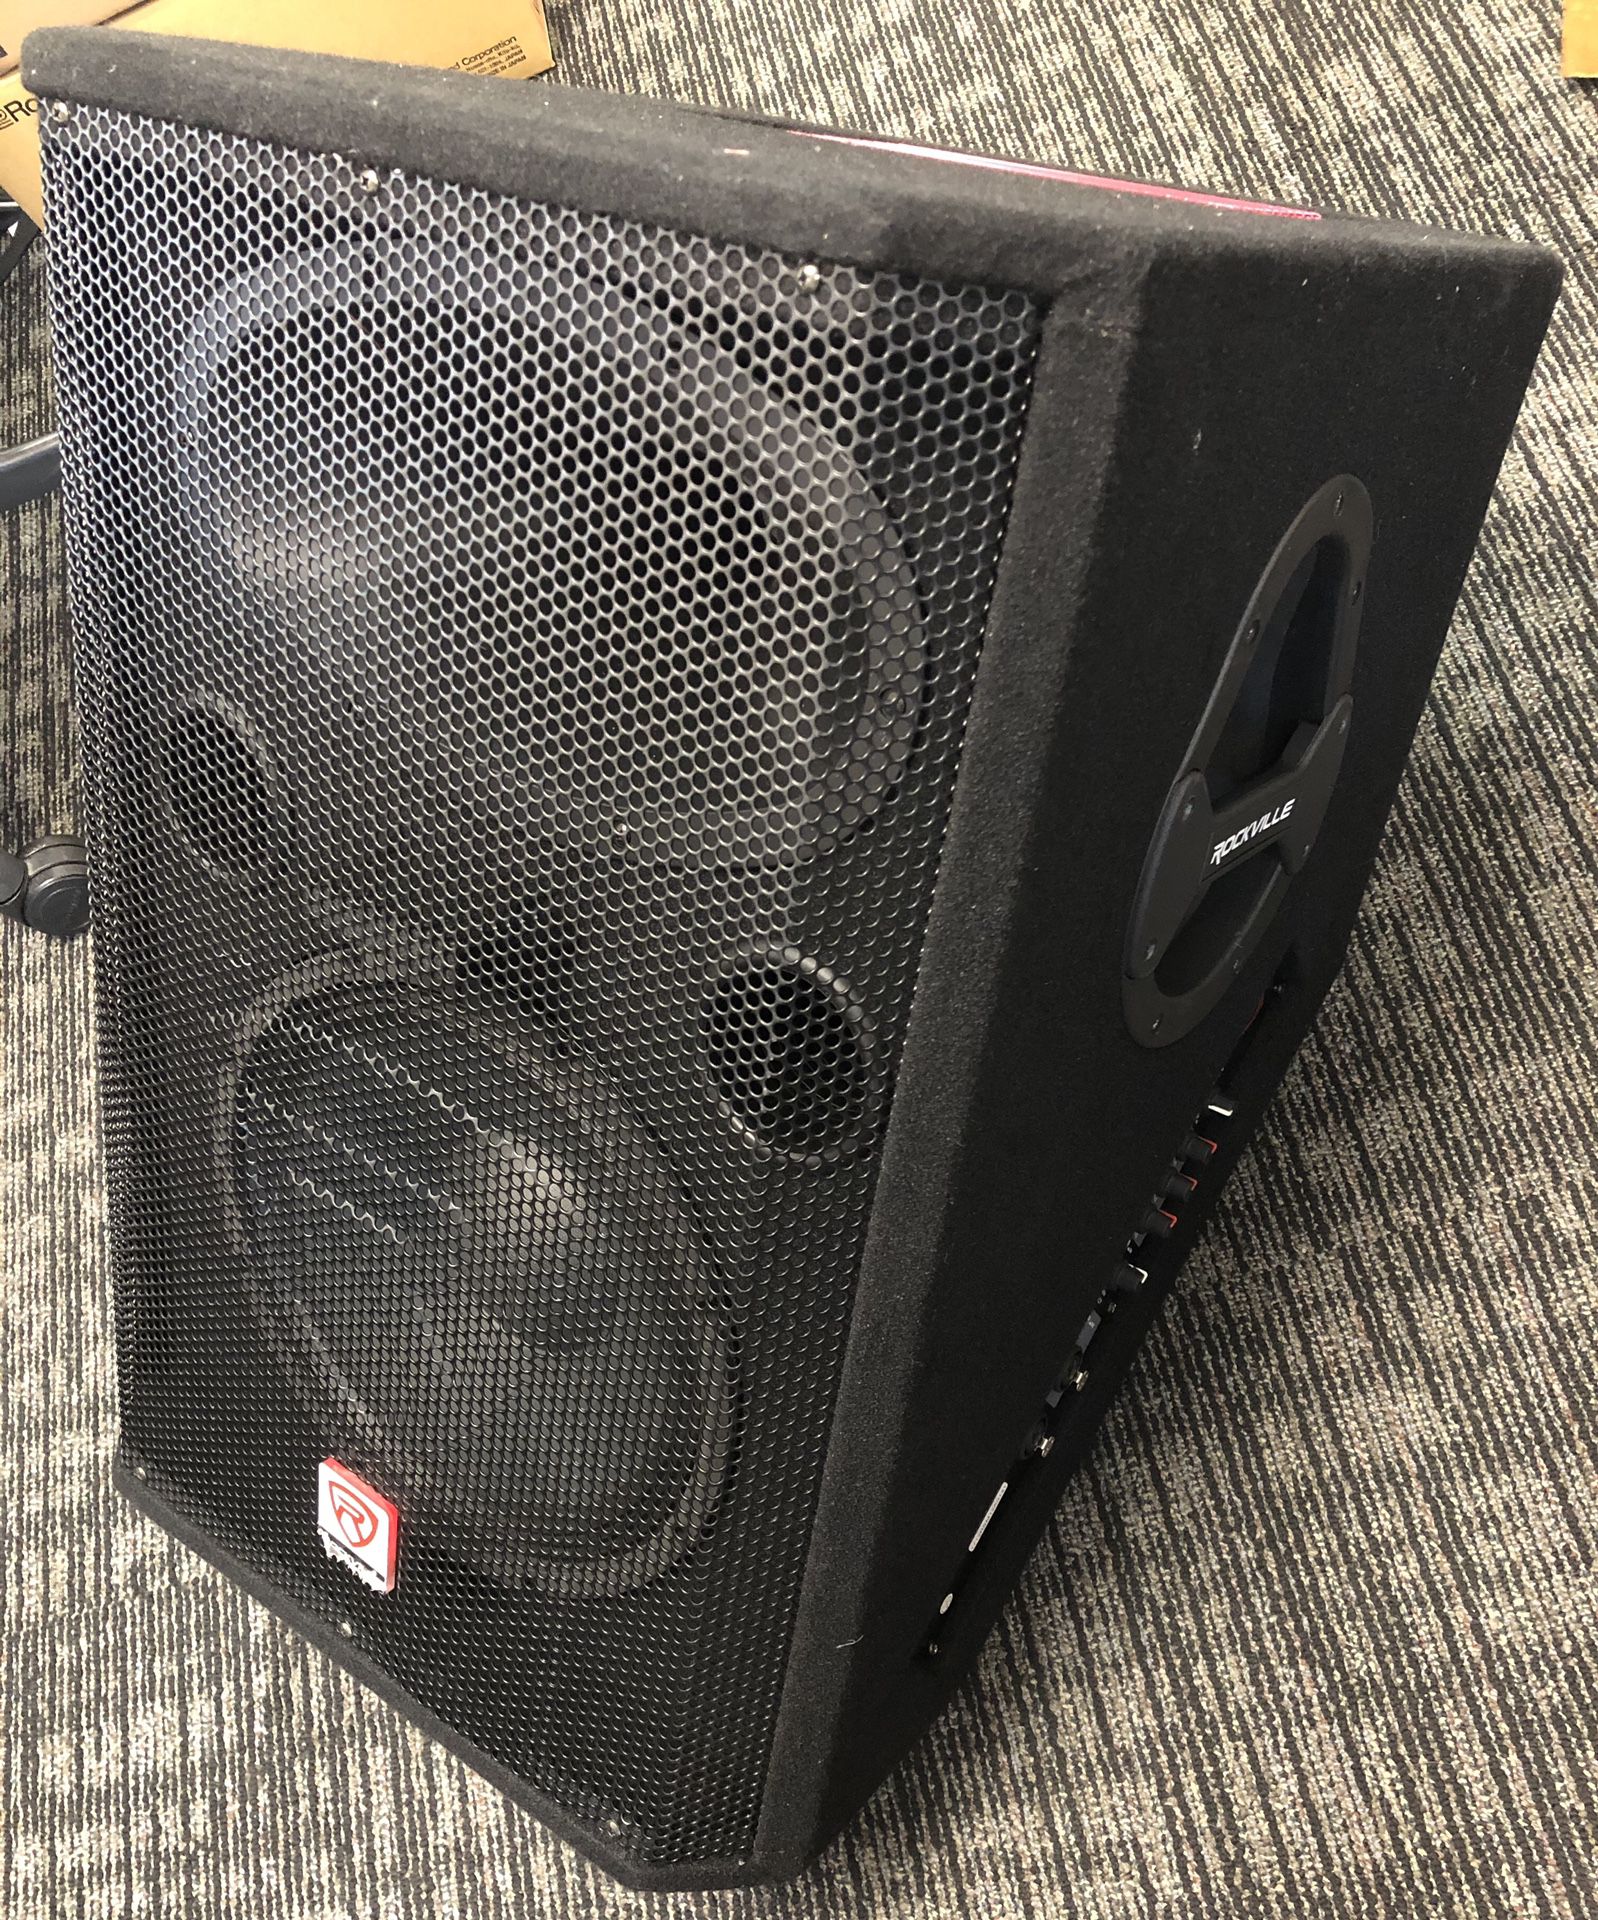 Rockville 12” loud speaker stage monitor